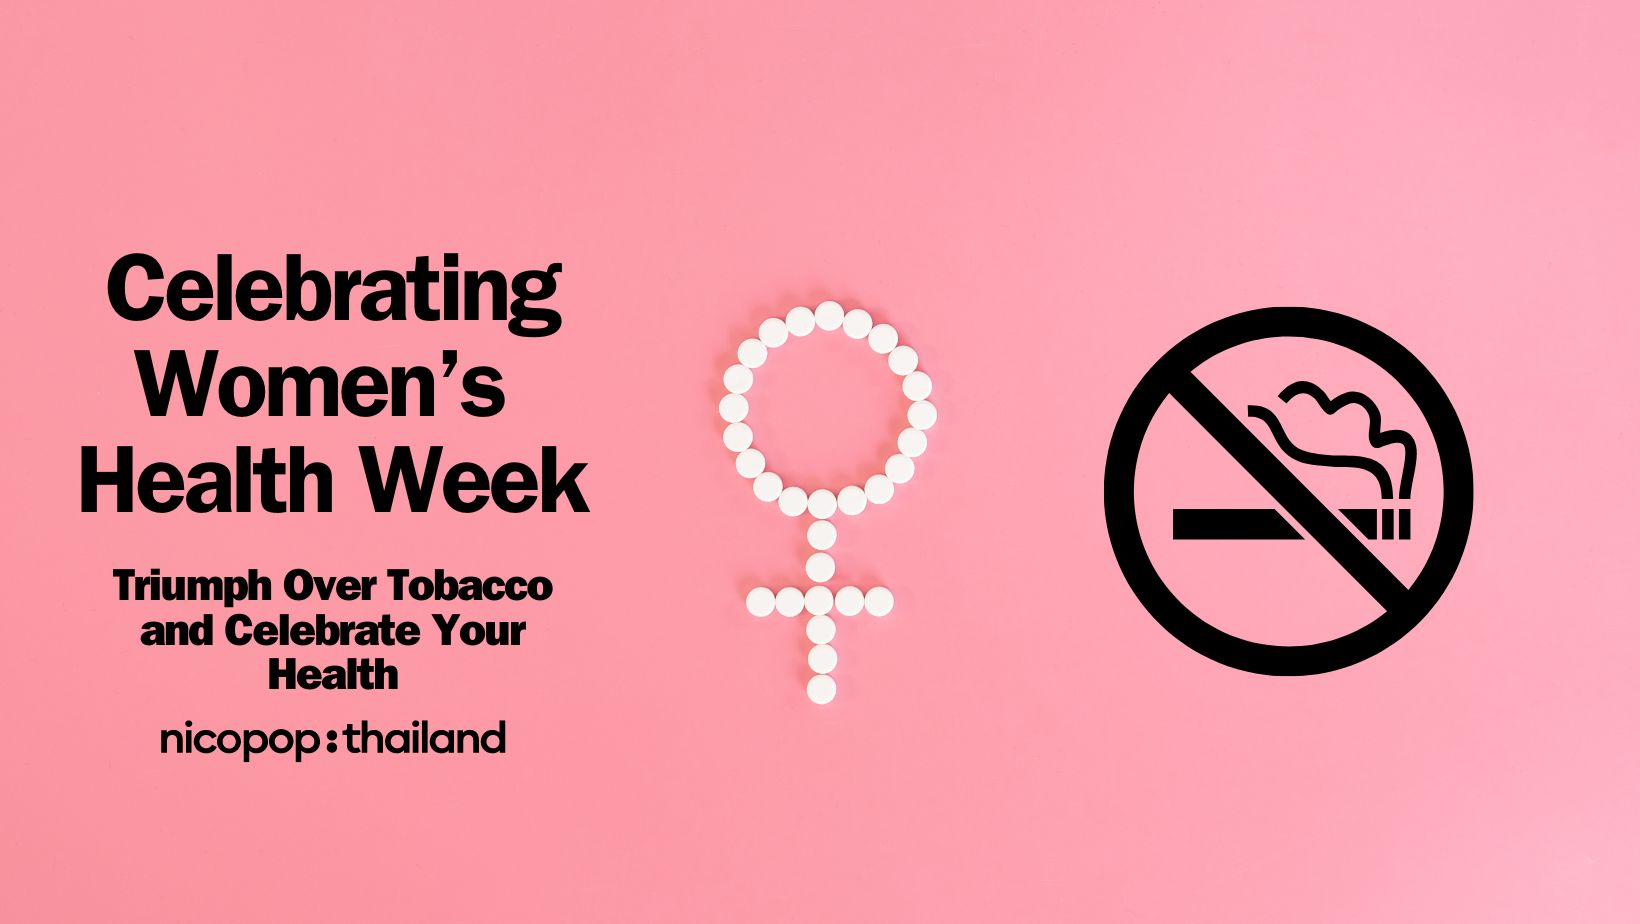 กราฟิกที่มีสัญลักษณ์ผู้หญิงและห้ามสูบบุหรี่บนพื้นหลังสีชมพูที่มีข้อความ “ฉลองสัปดาห์สุขภาพของผู้หญิง – ชัยชนะเหนือยาสูบและฉลองสุขภาพของคุณ”